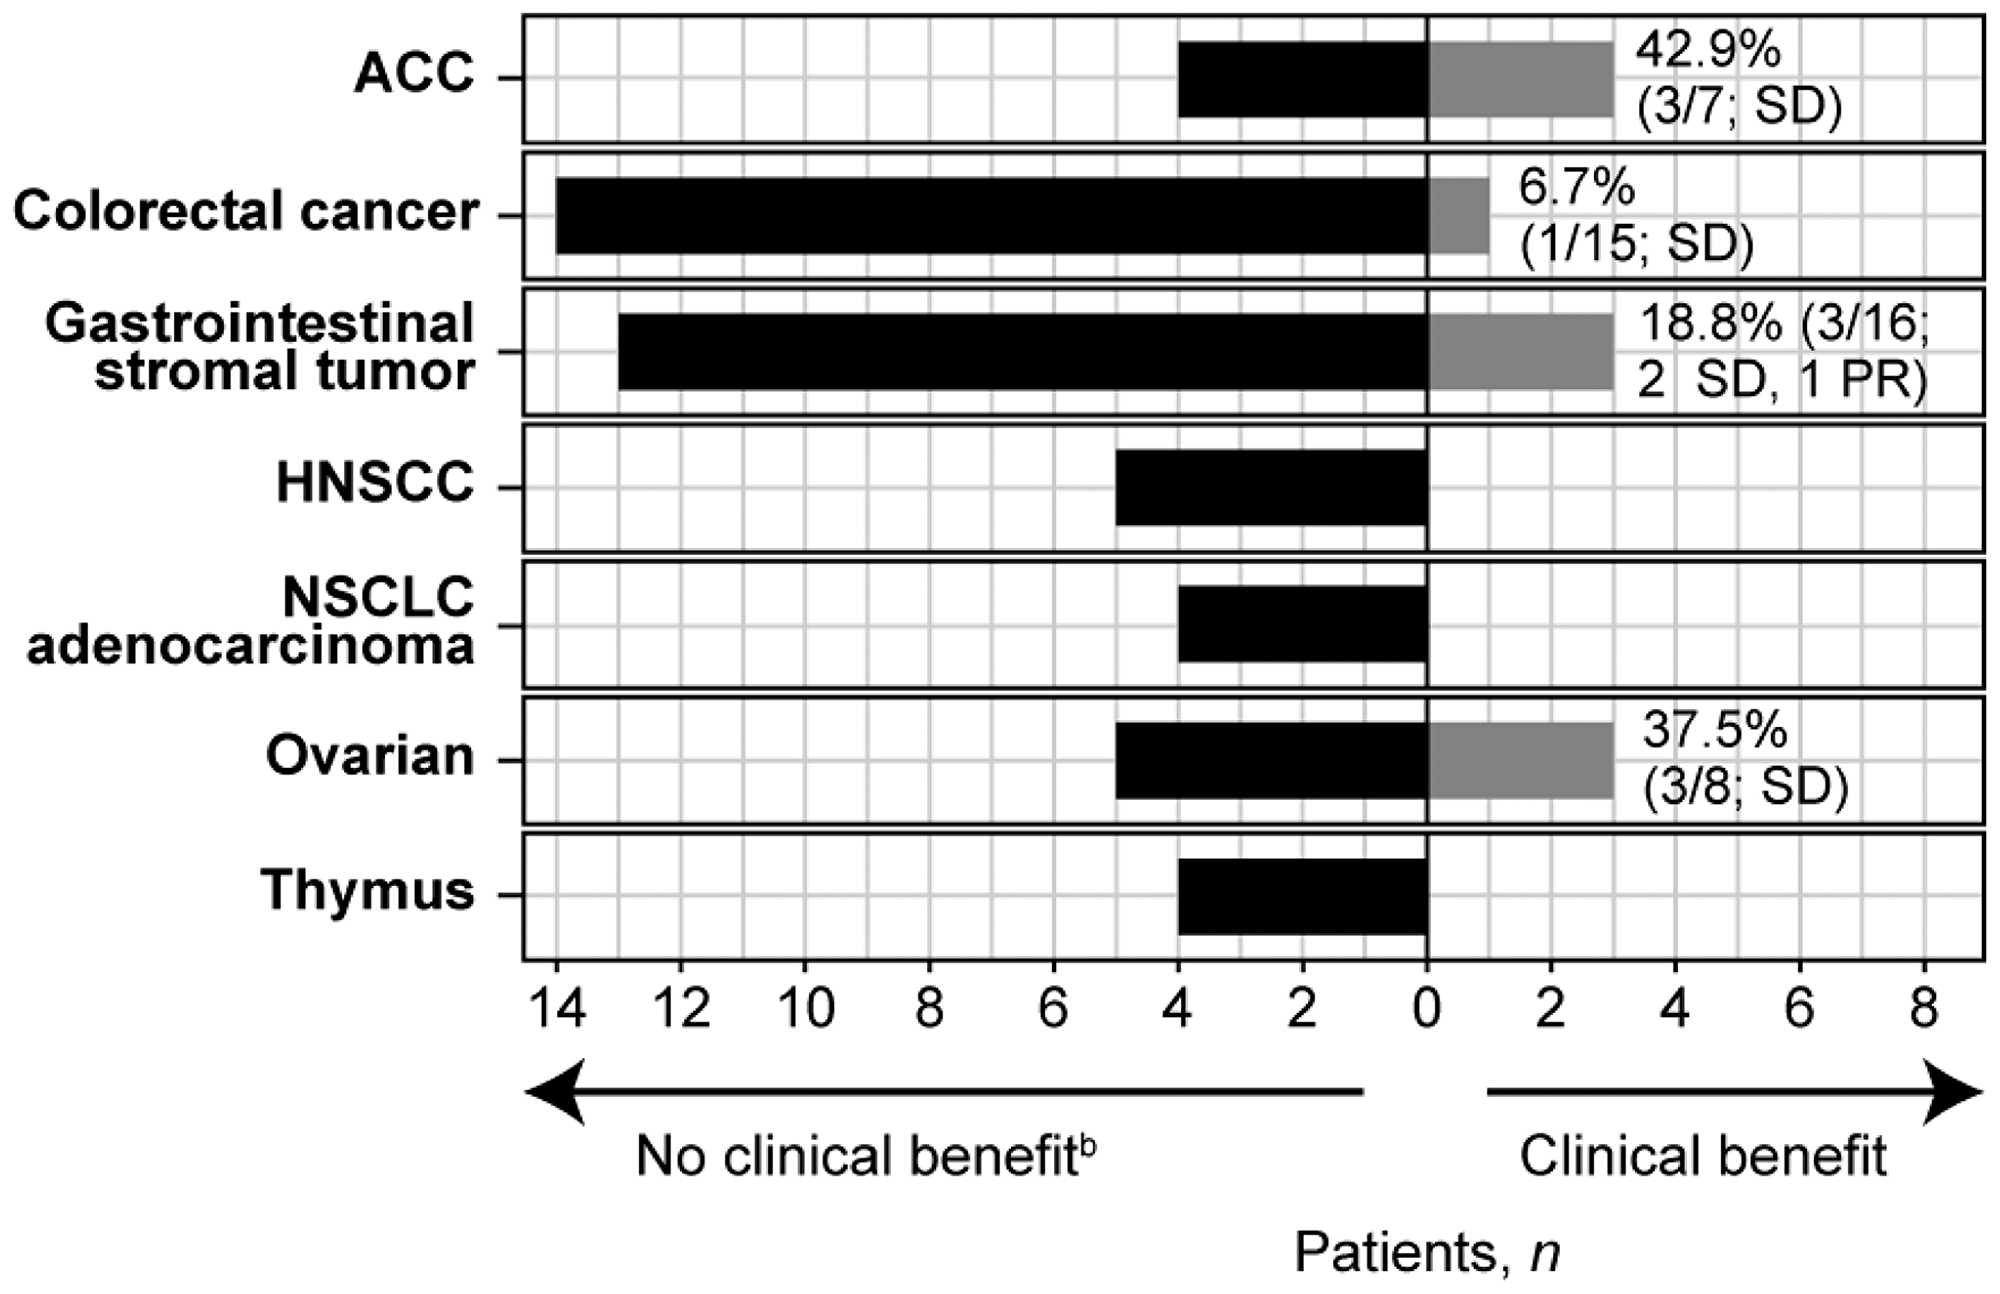 Clinical benefit per tumor type cohorta.